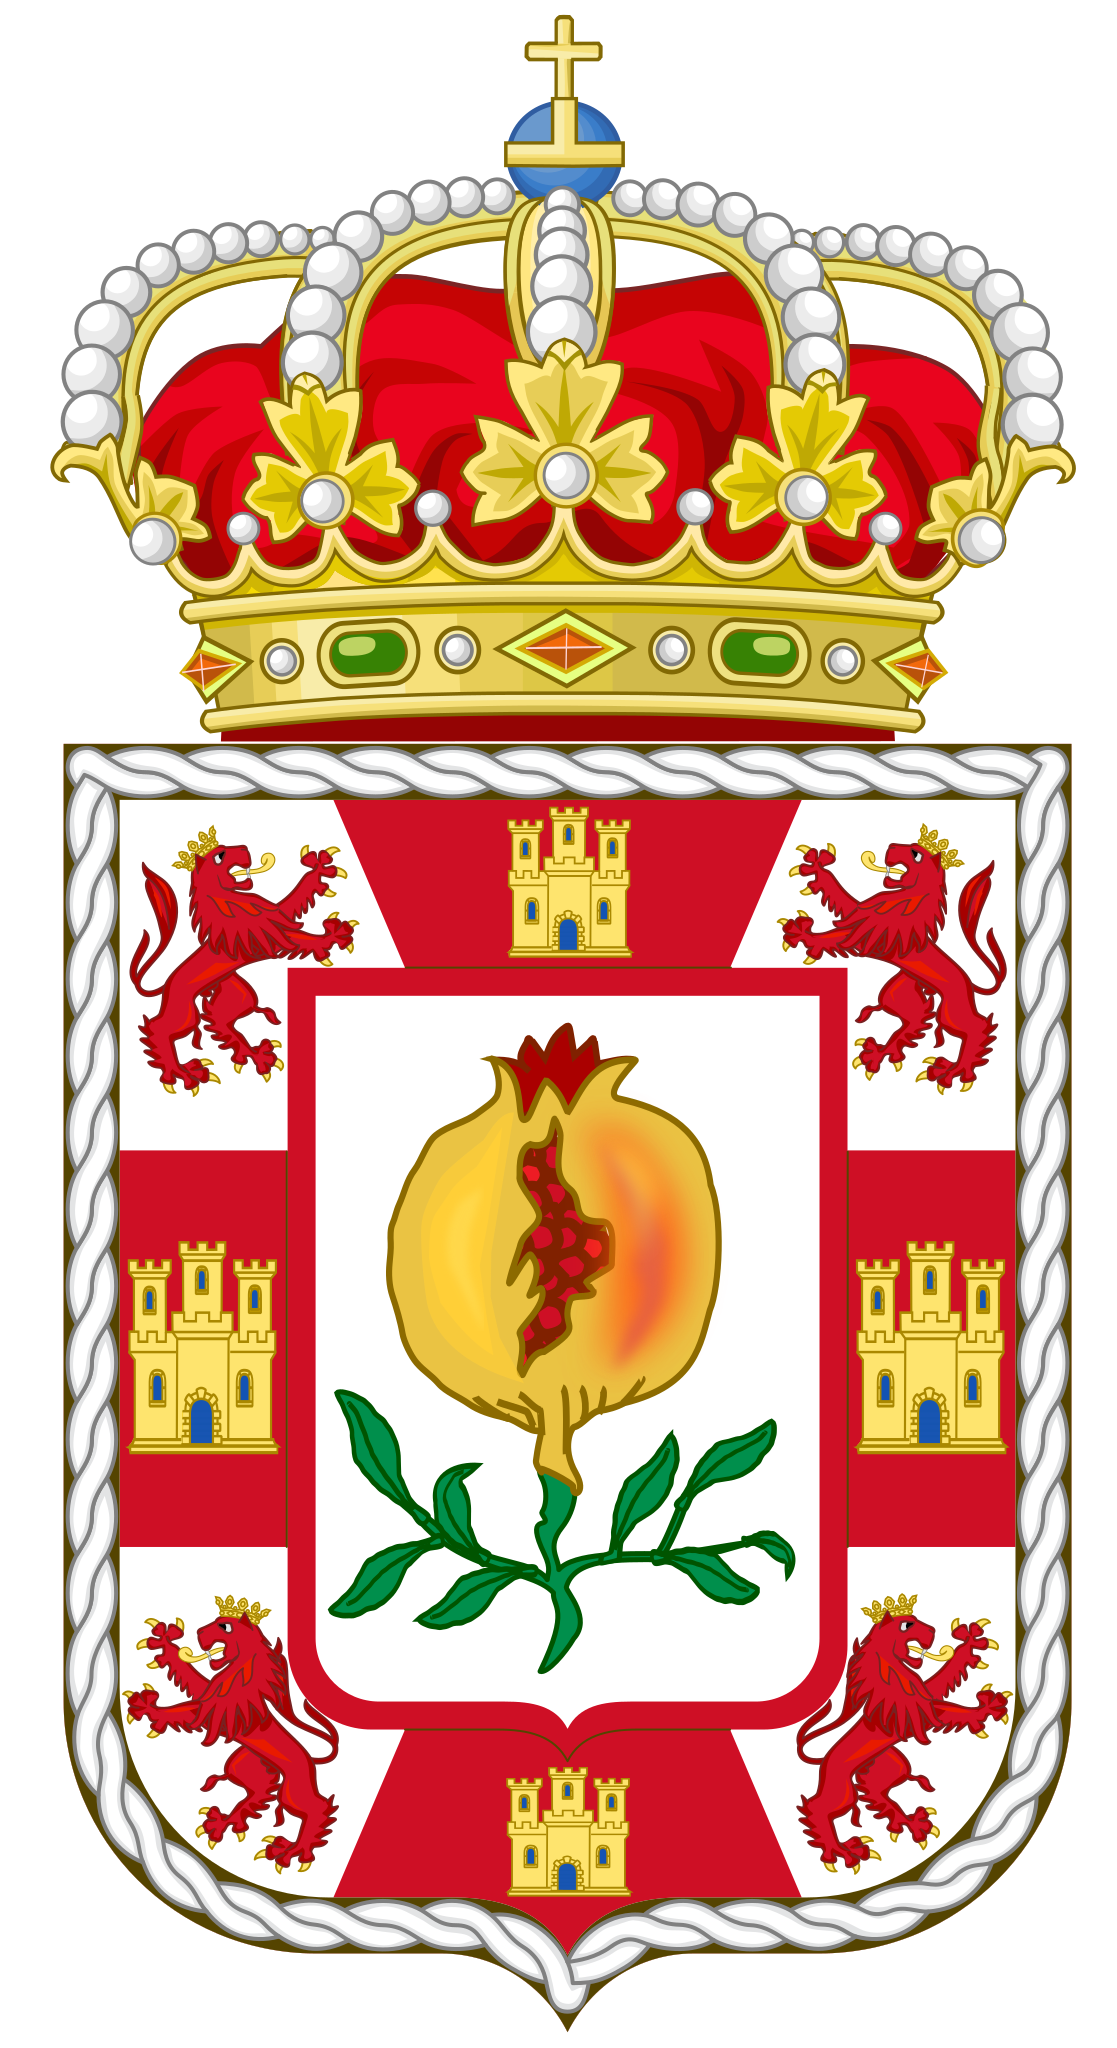 File:Escudo de Colomera (Granada).svg - Wikipedia